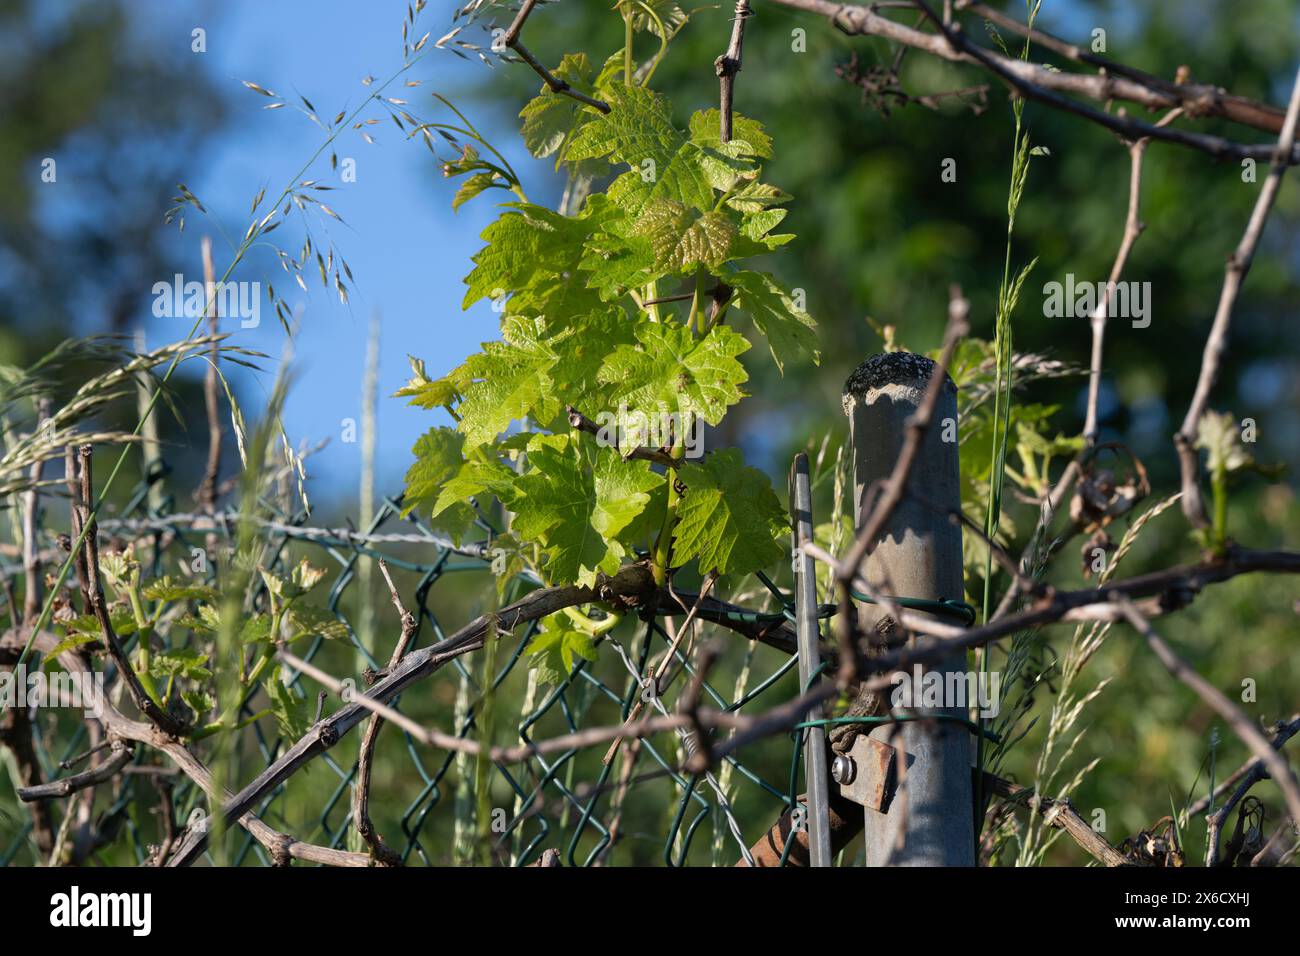 Jeunes feuilles de vigne, brindilles et herbes sur une clôture, prises au printemps. Banque D'Images